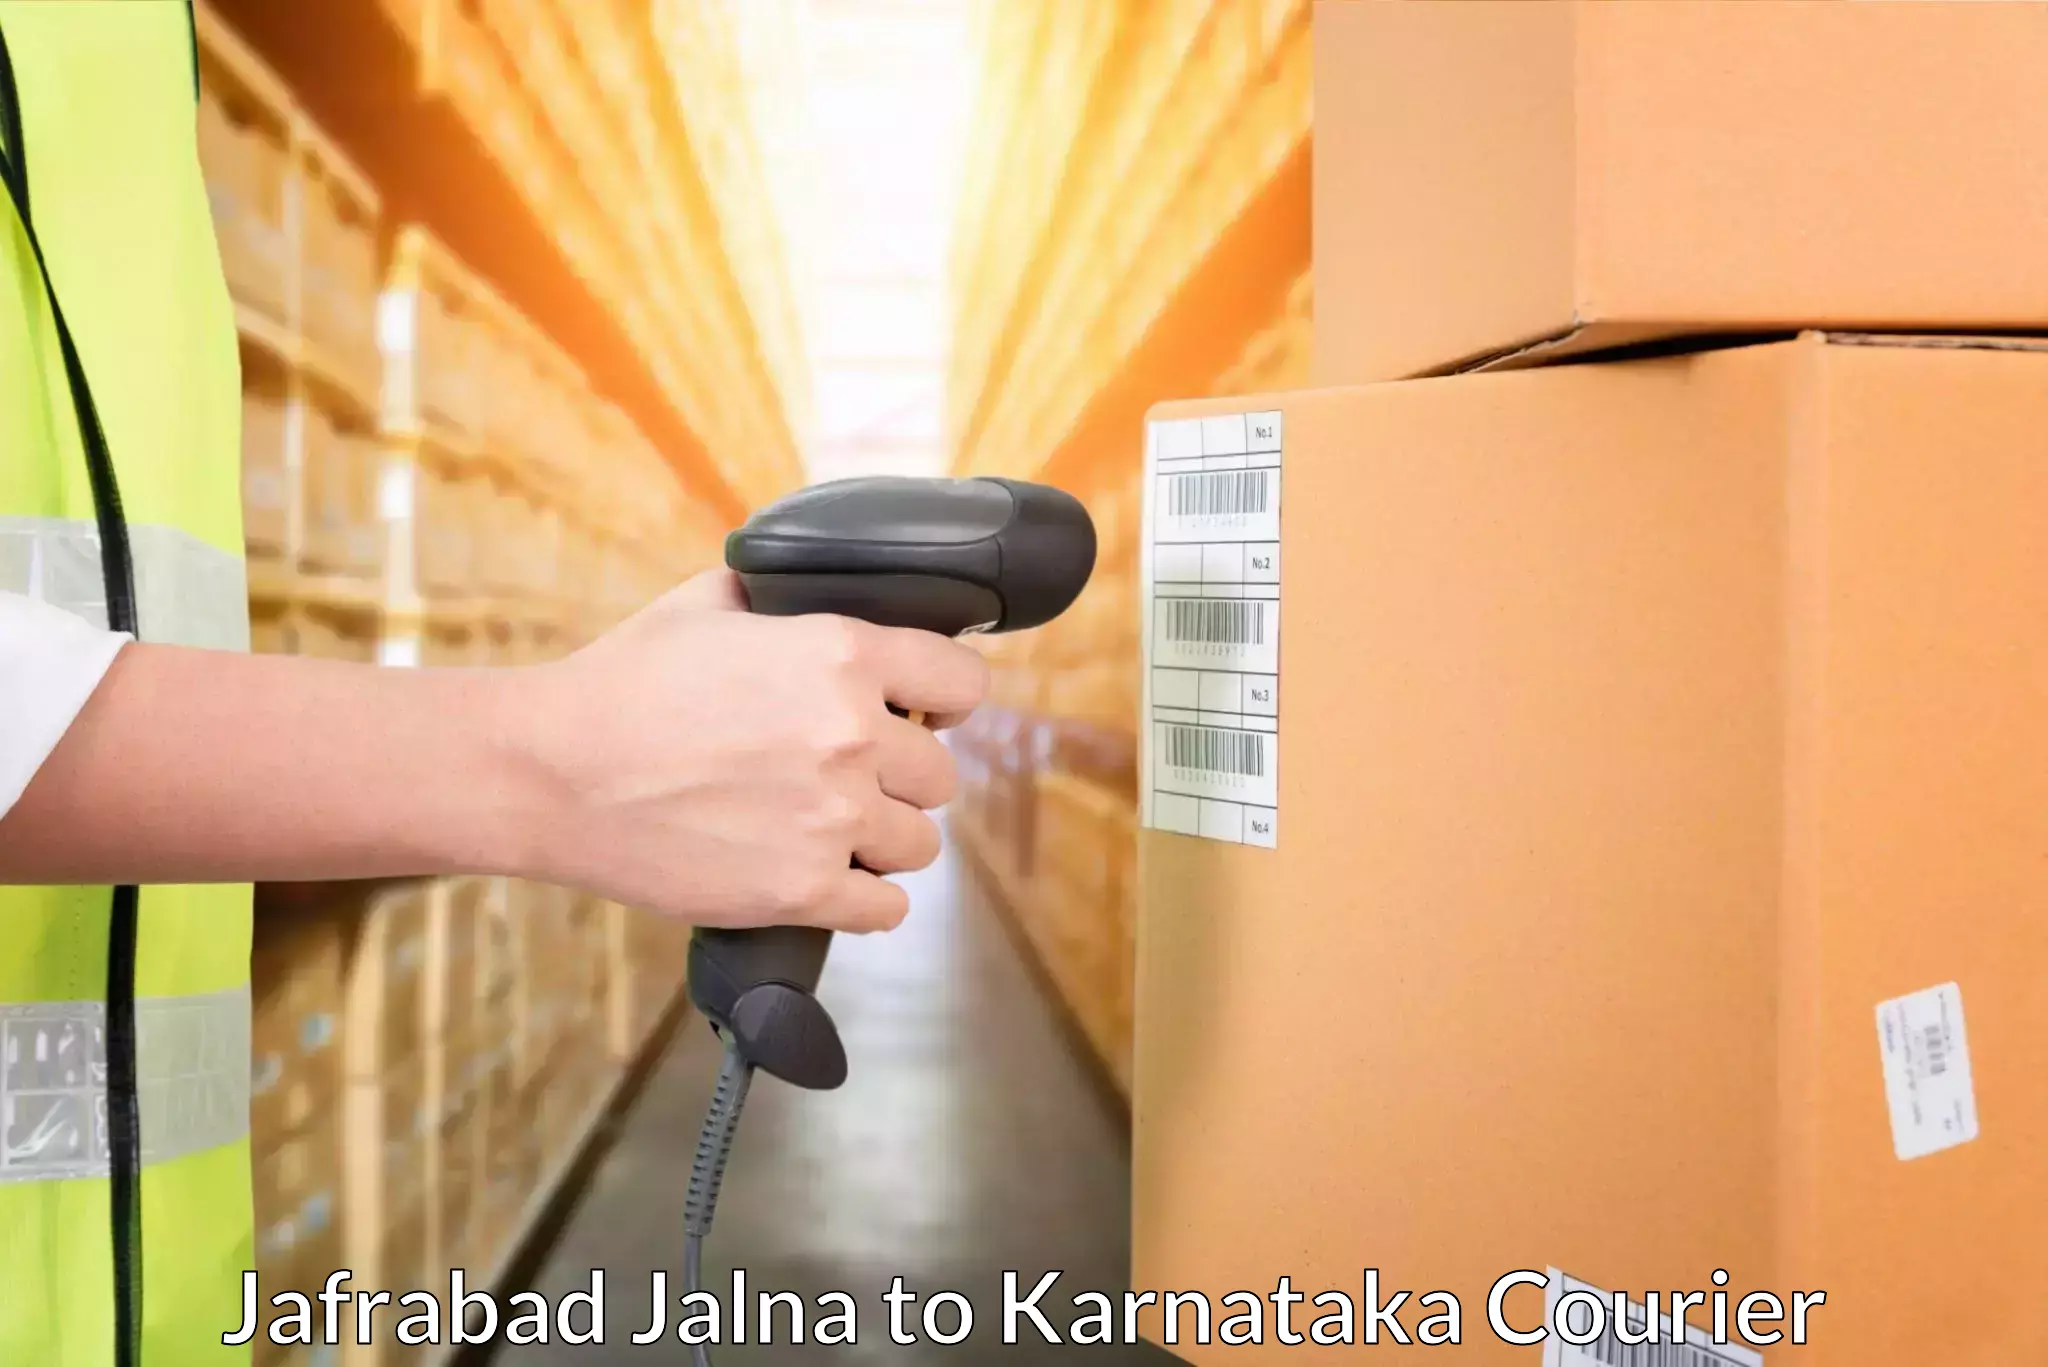 Parcel service for businesses in Jafrabad Jalna to Shimoga